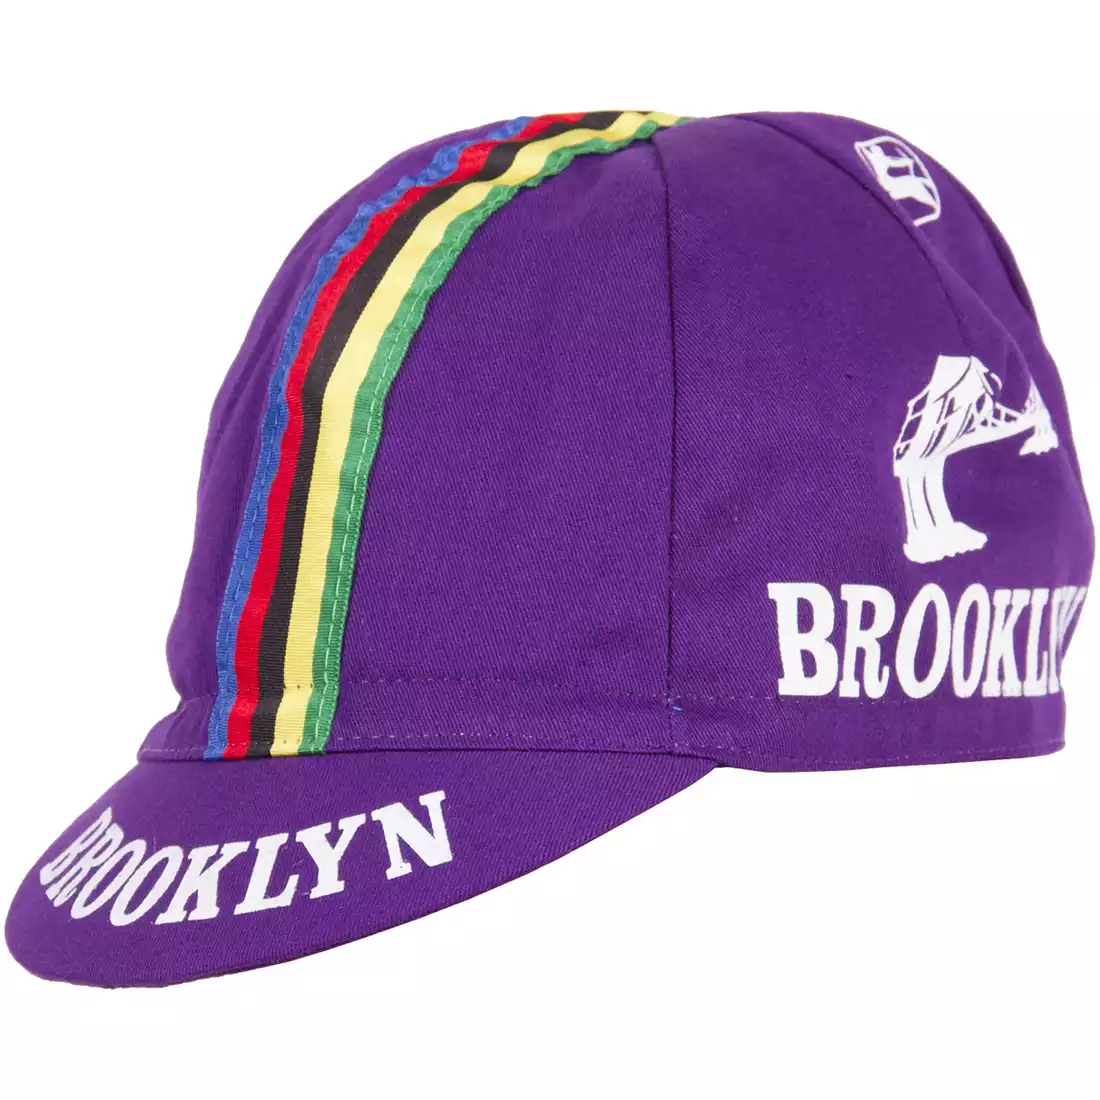 GIORDANA SS18 czapeczka kolarska - Brooklyn -  Purple w/ Stripe tape  GI-S6-COCA-BROK-PURP one size